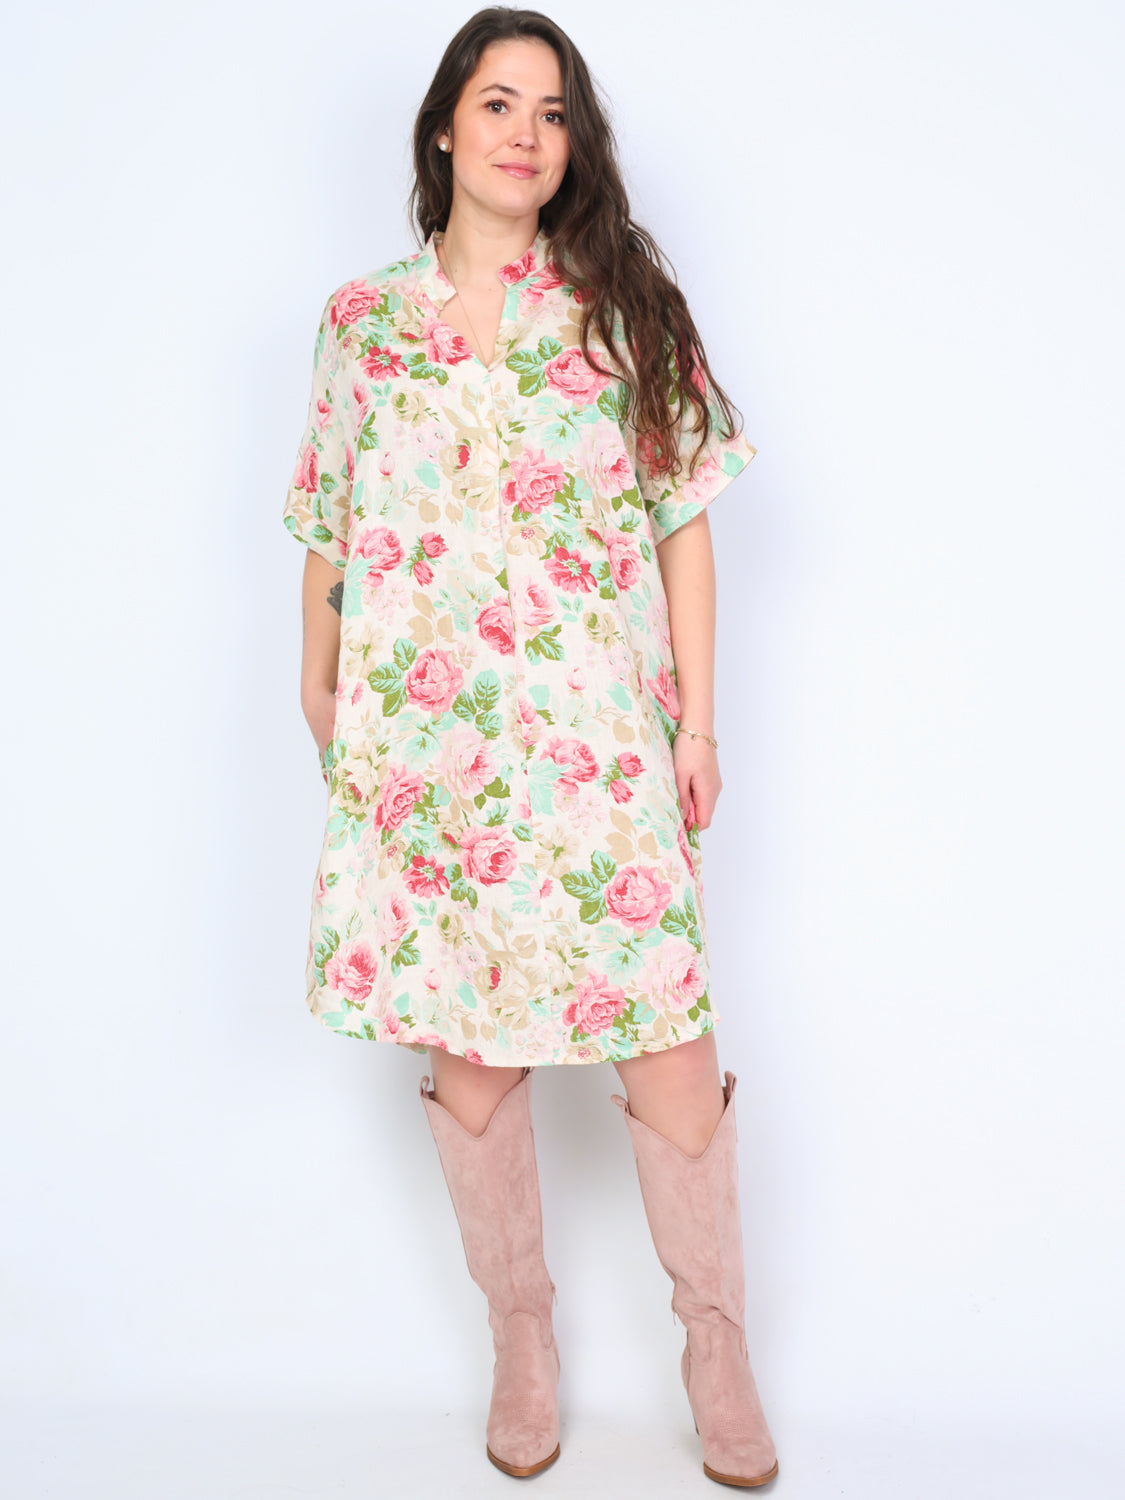 Krone 1 linen shirt dress with flower print 